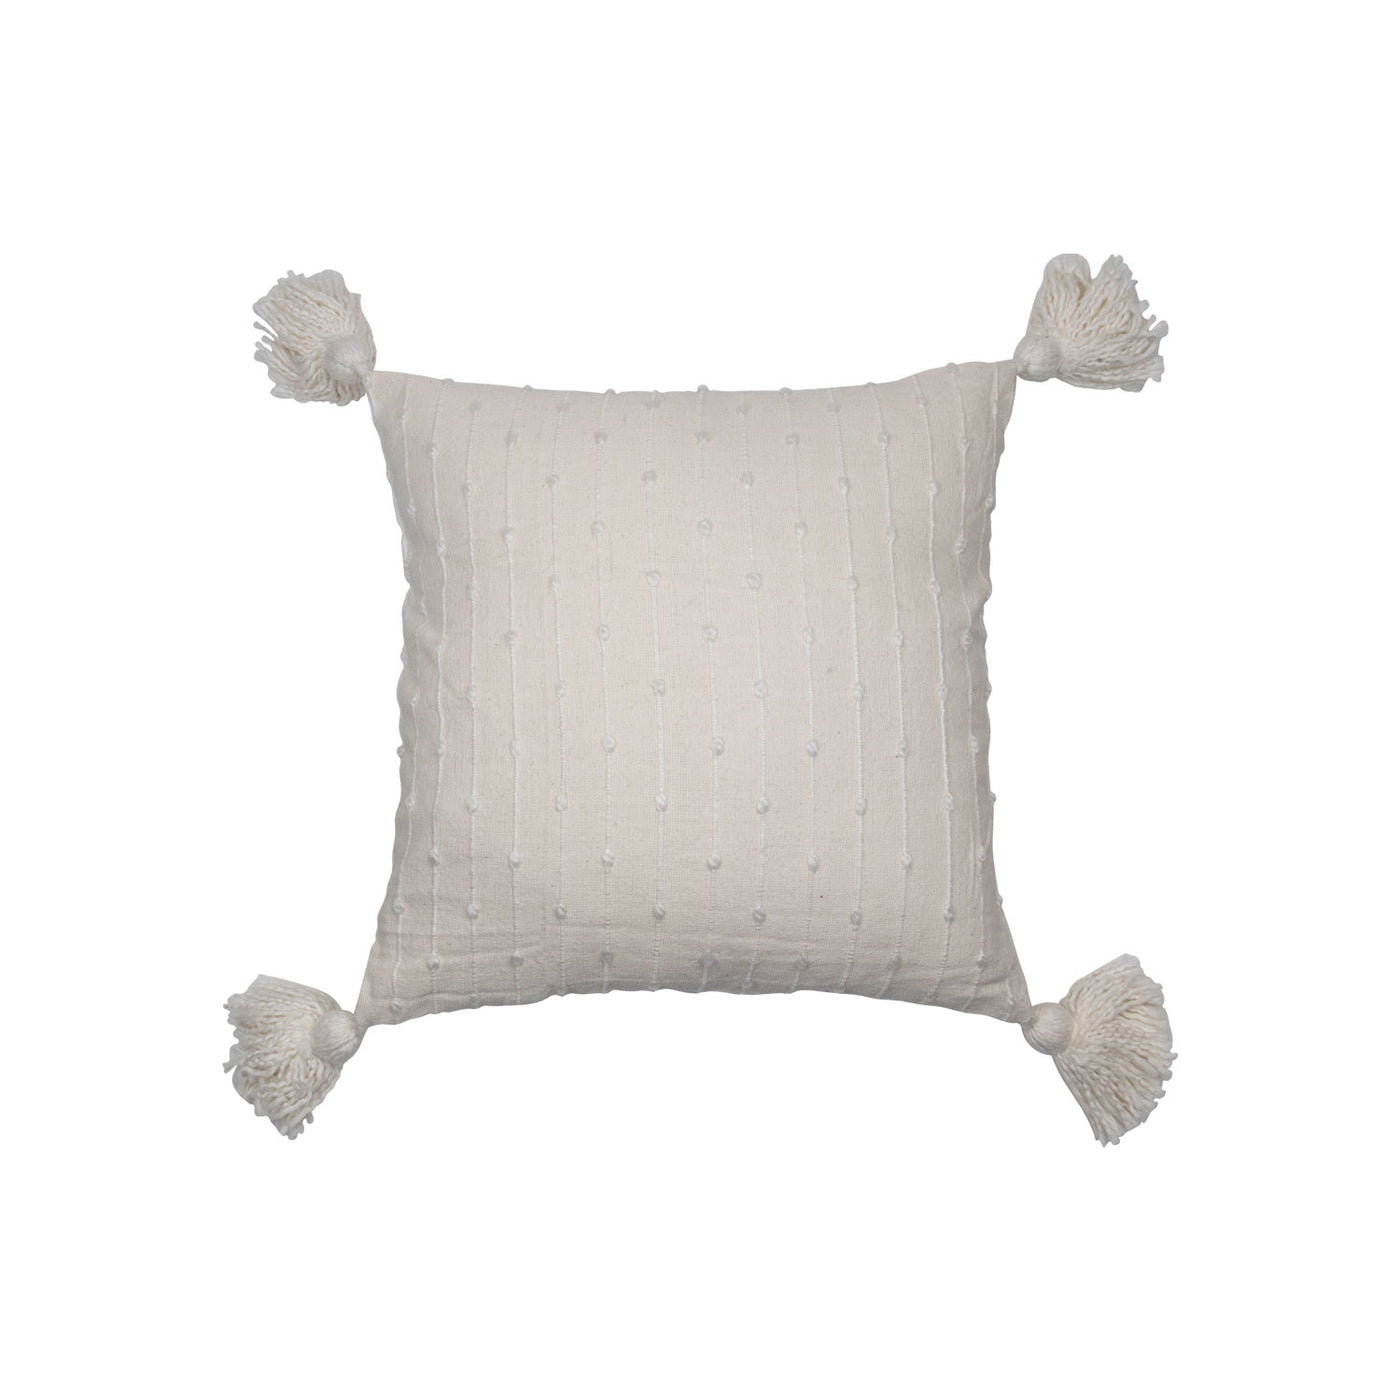 Simple Textured Pillow w/Tassels